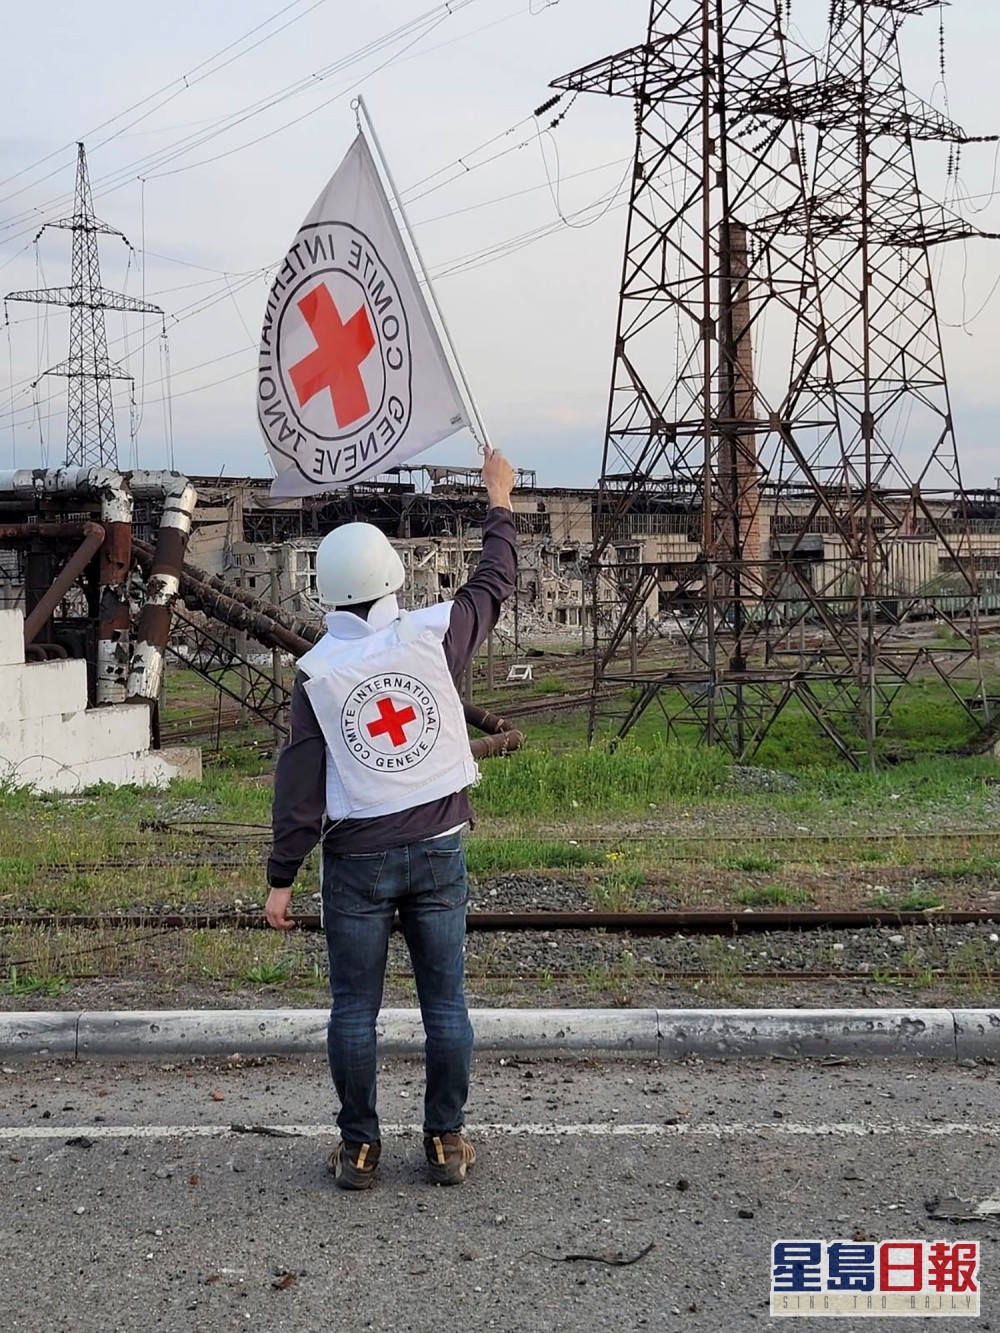 红十字会指正参与疏散平民的行动。AP